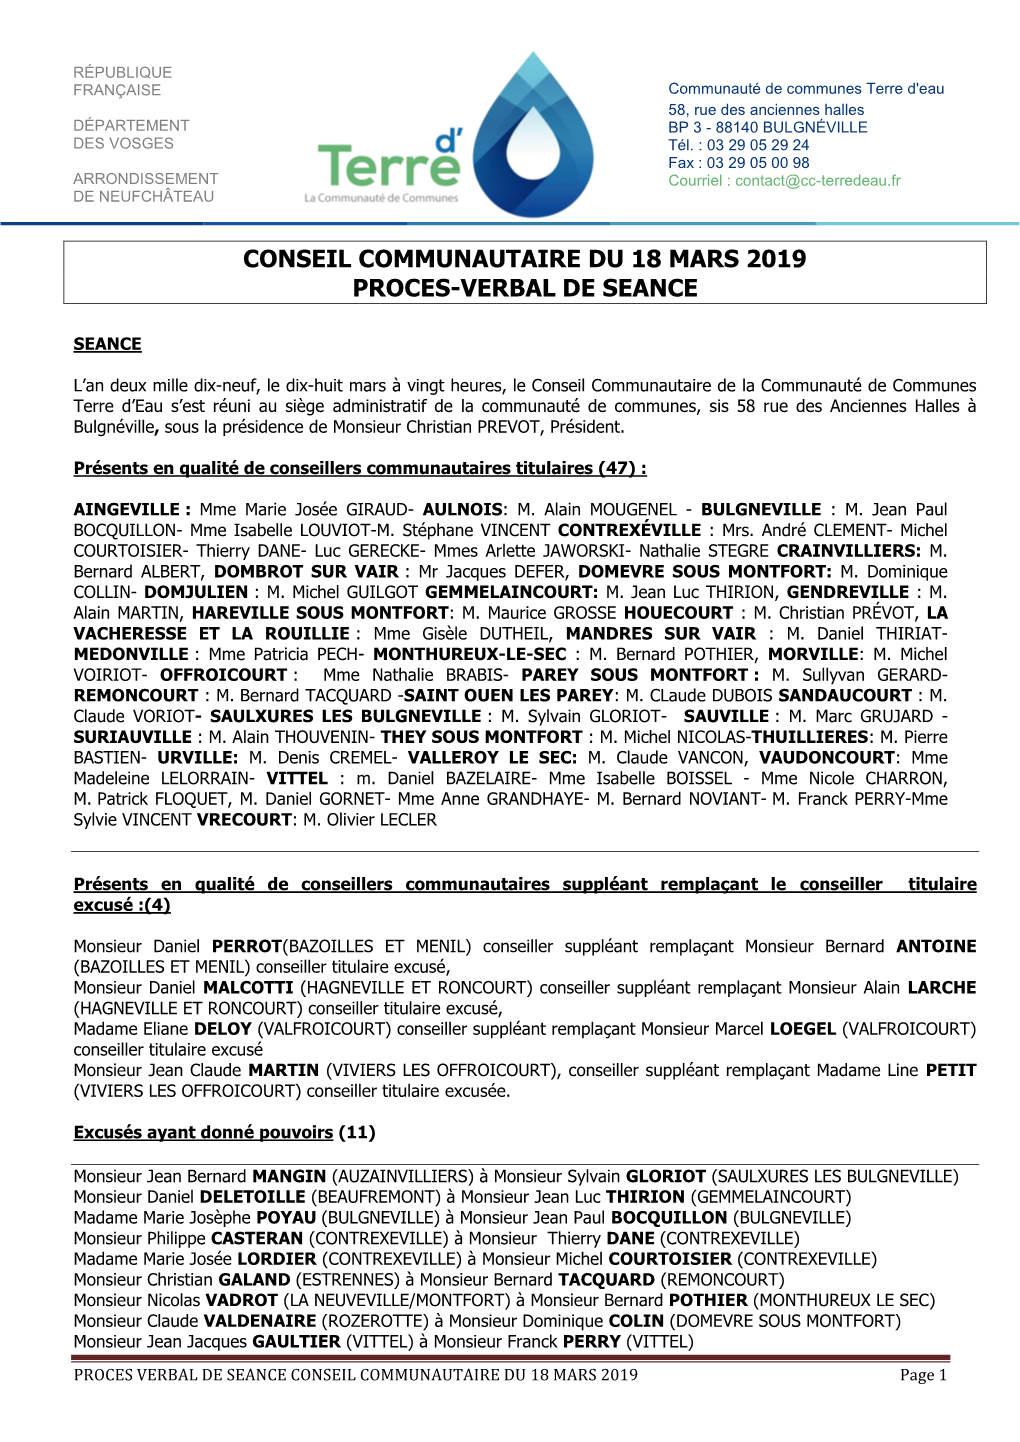 Conseil Communautaire Du 18 Mars 2019 Proces-Verbal De Seance